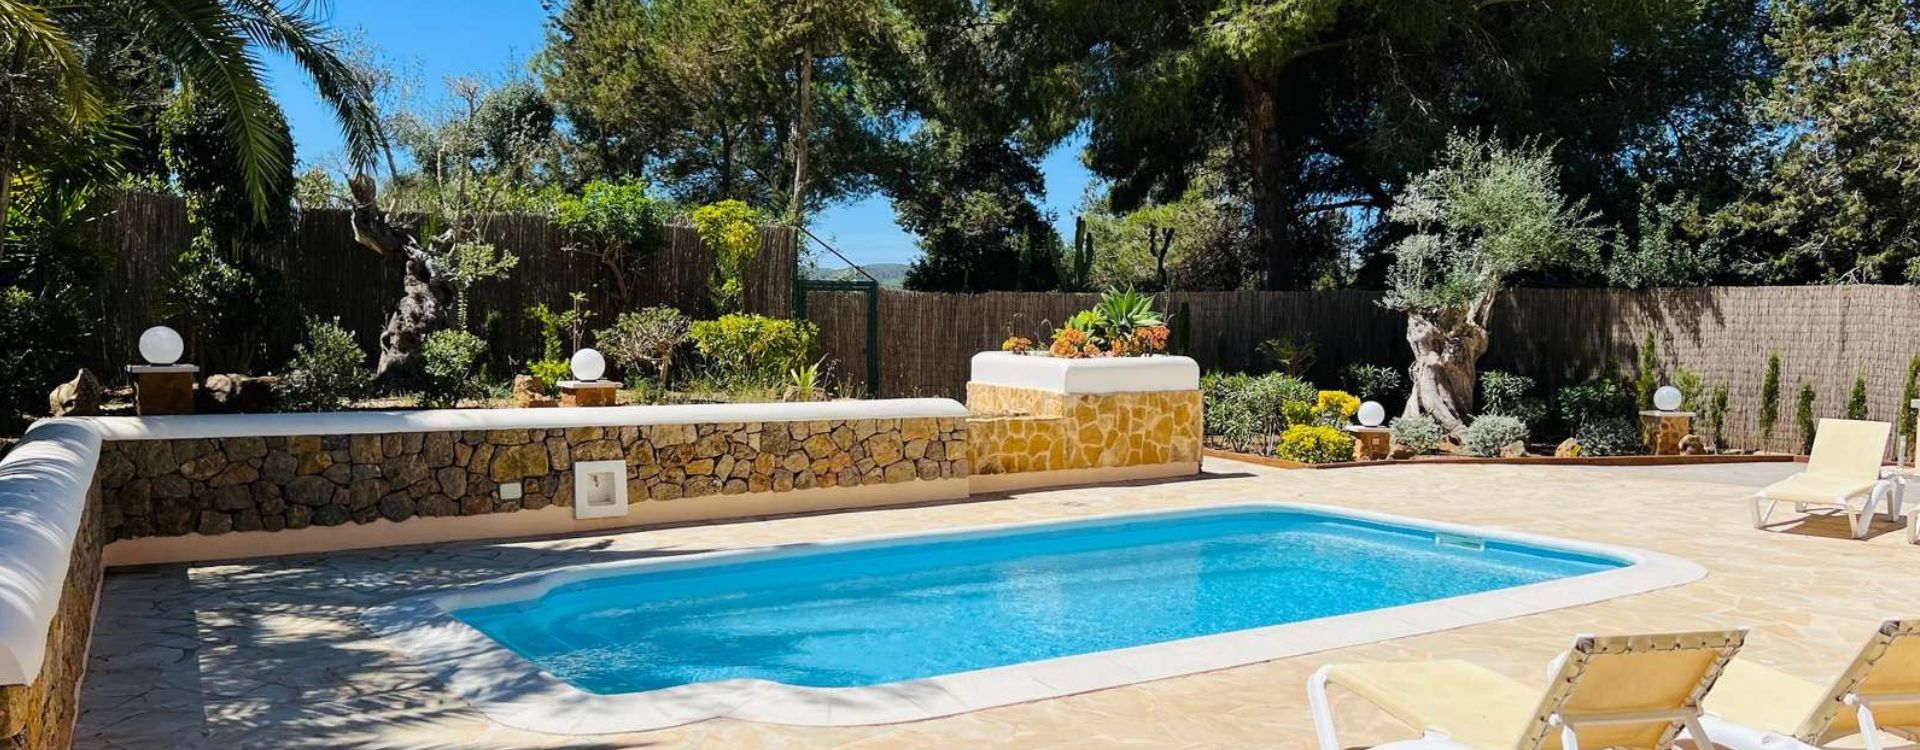 Ibiza, Casa Verde, Ibizadesk, villa huren, privé zwembad